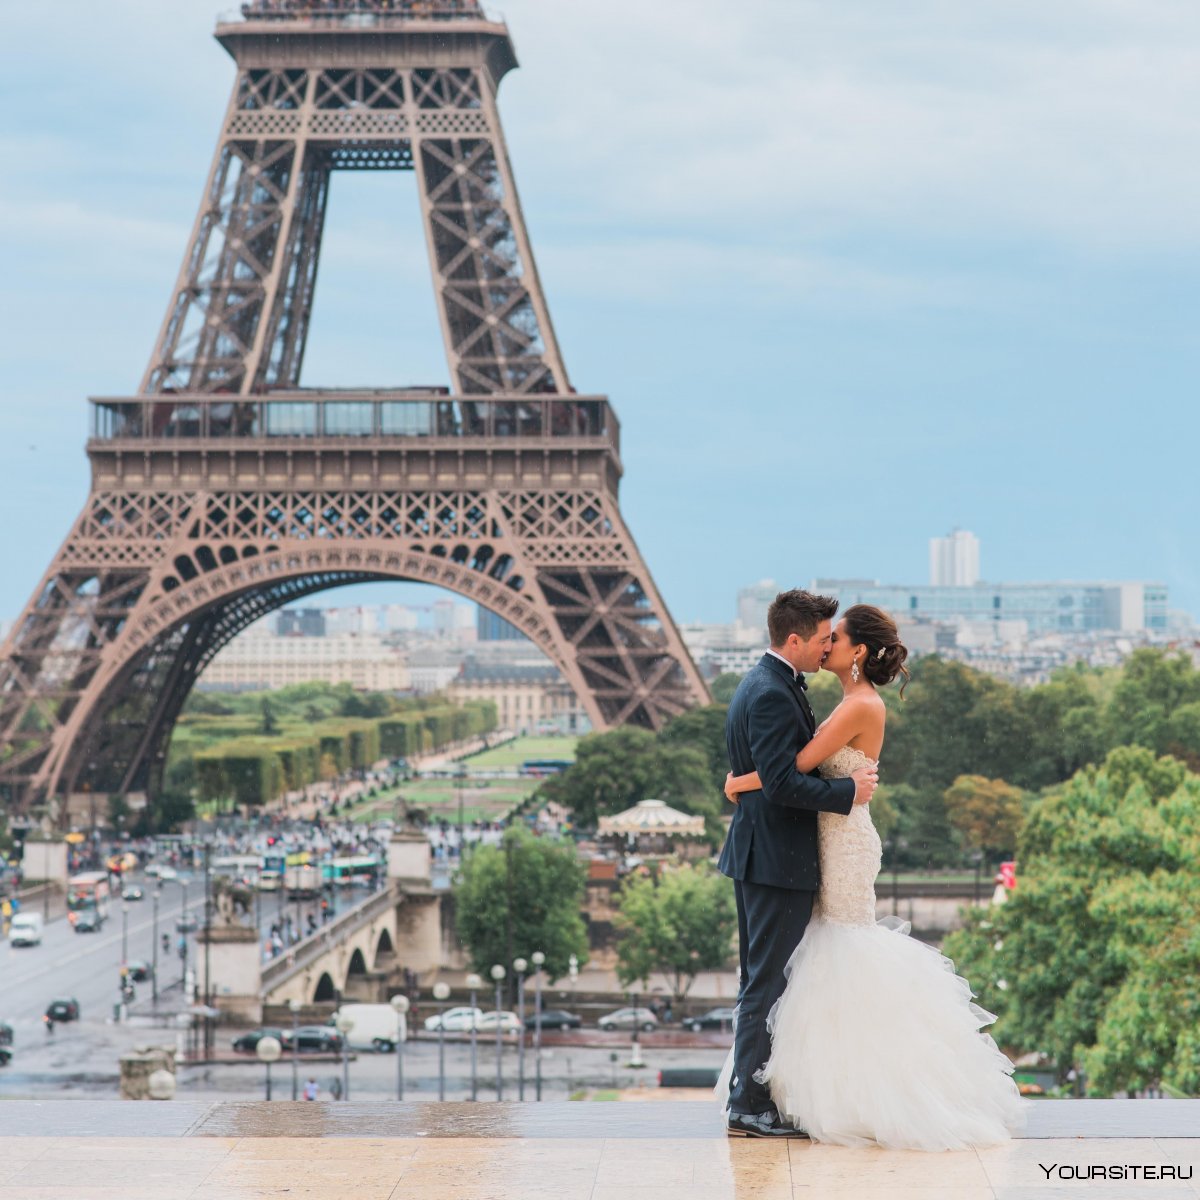 Медовый месяц в Париже